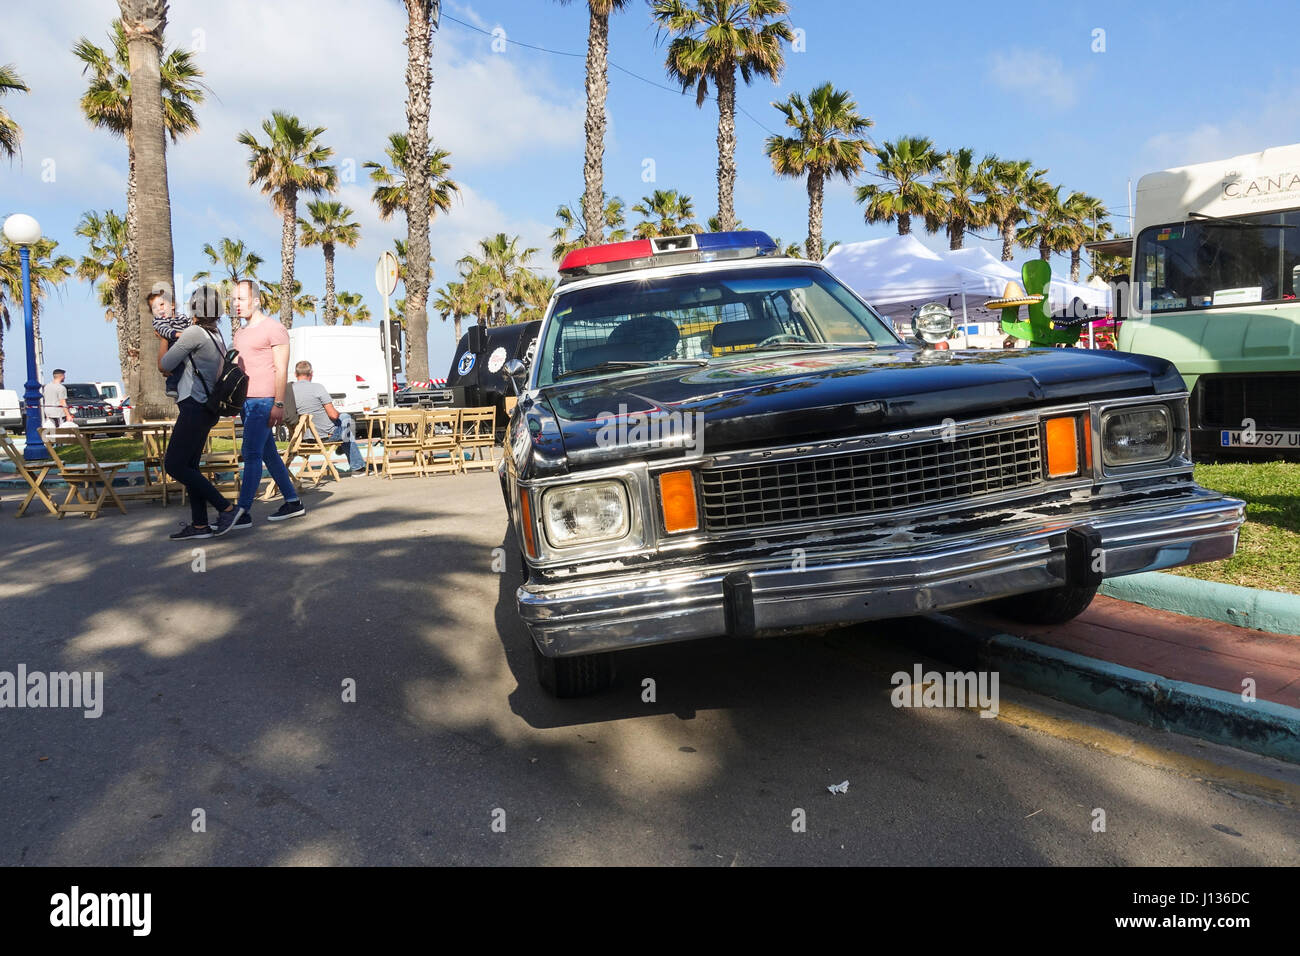 American police car Food trucks festival, festive, celebration in Port of Benalmadena, Andalusia, Spain Stock Photo